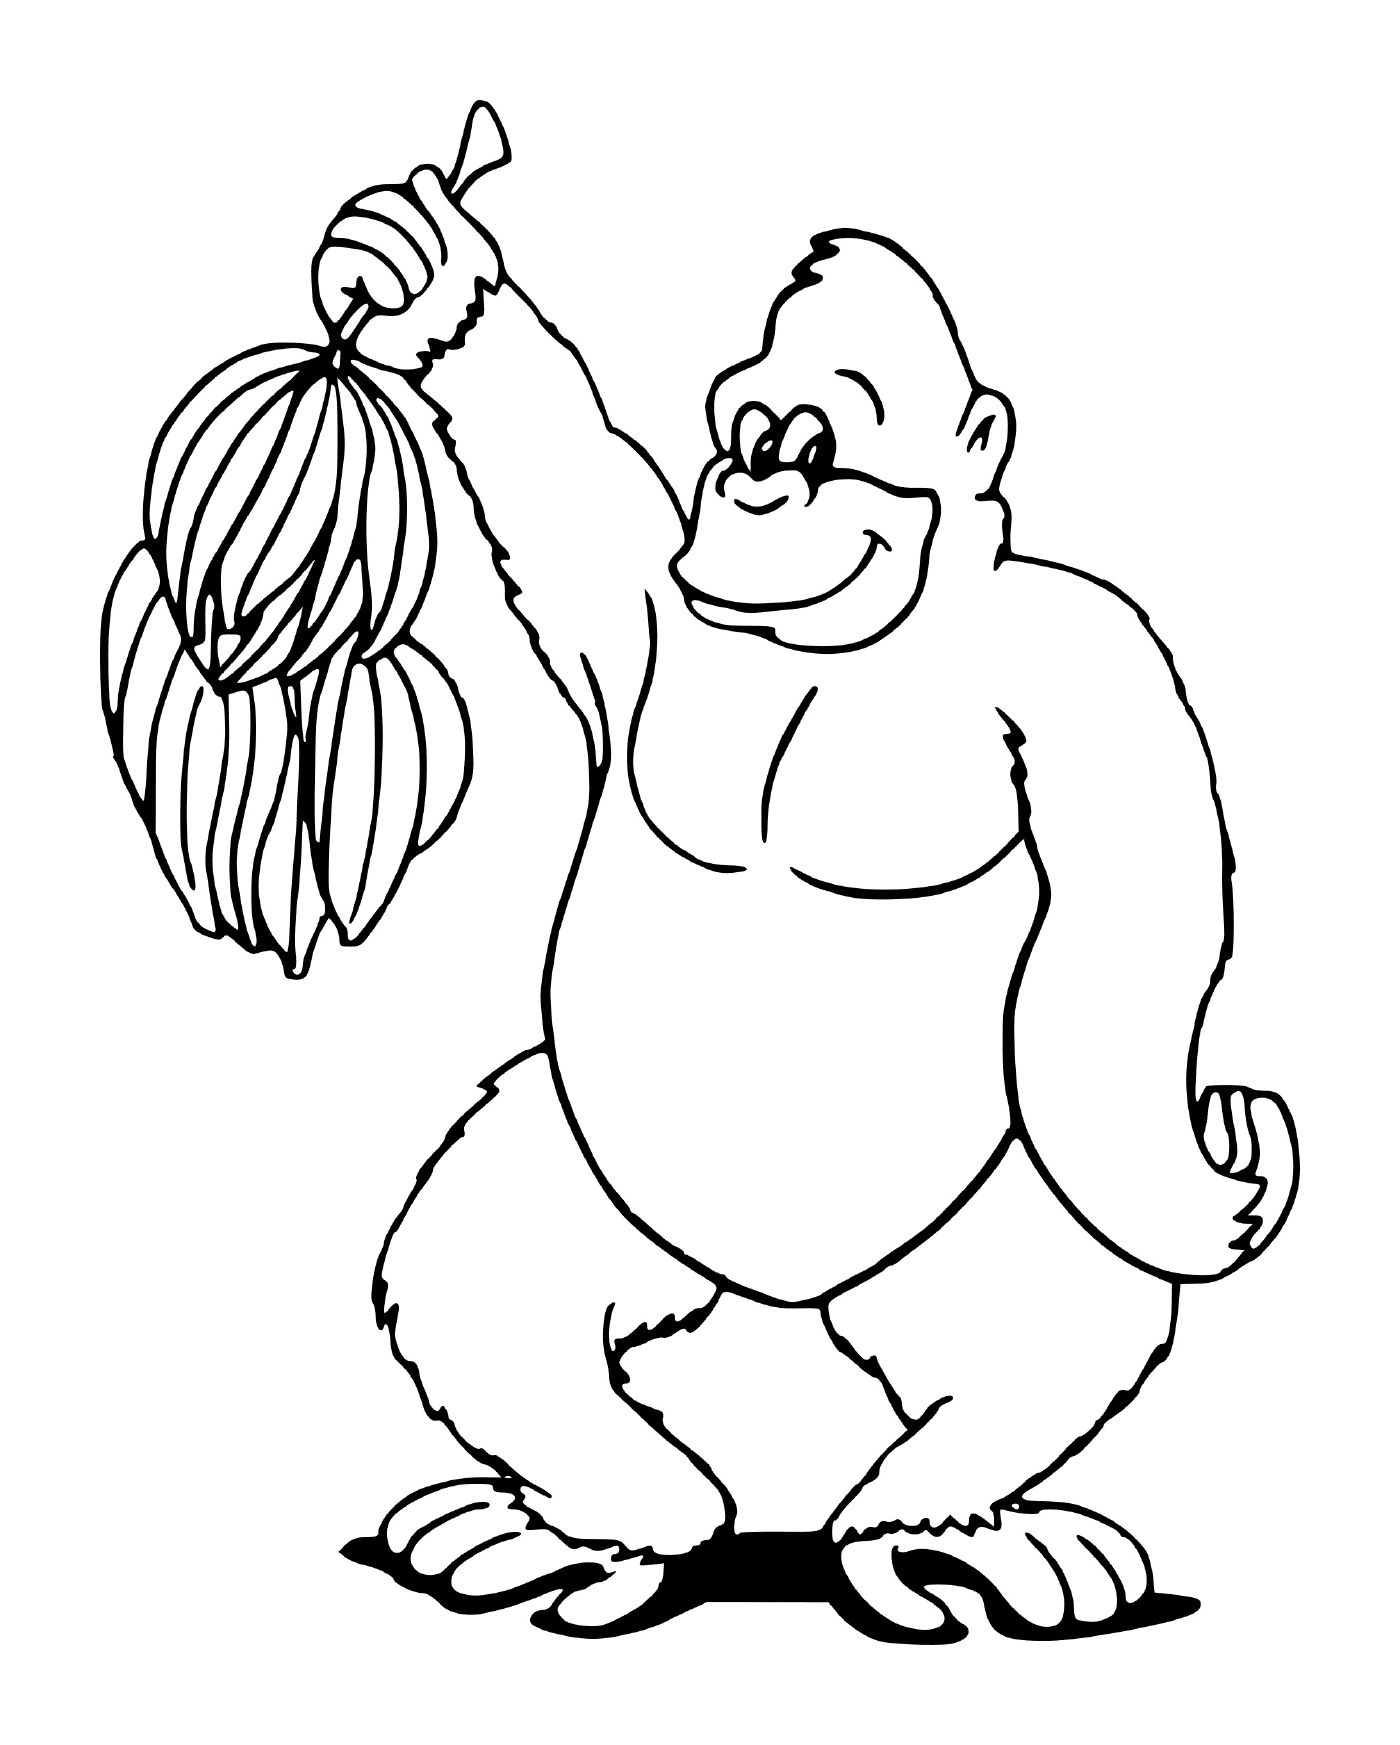  a gorilla holding a bunch of bananas 